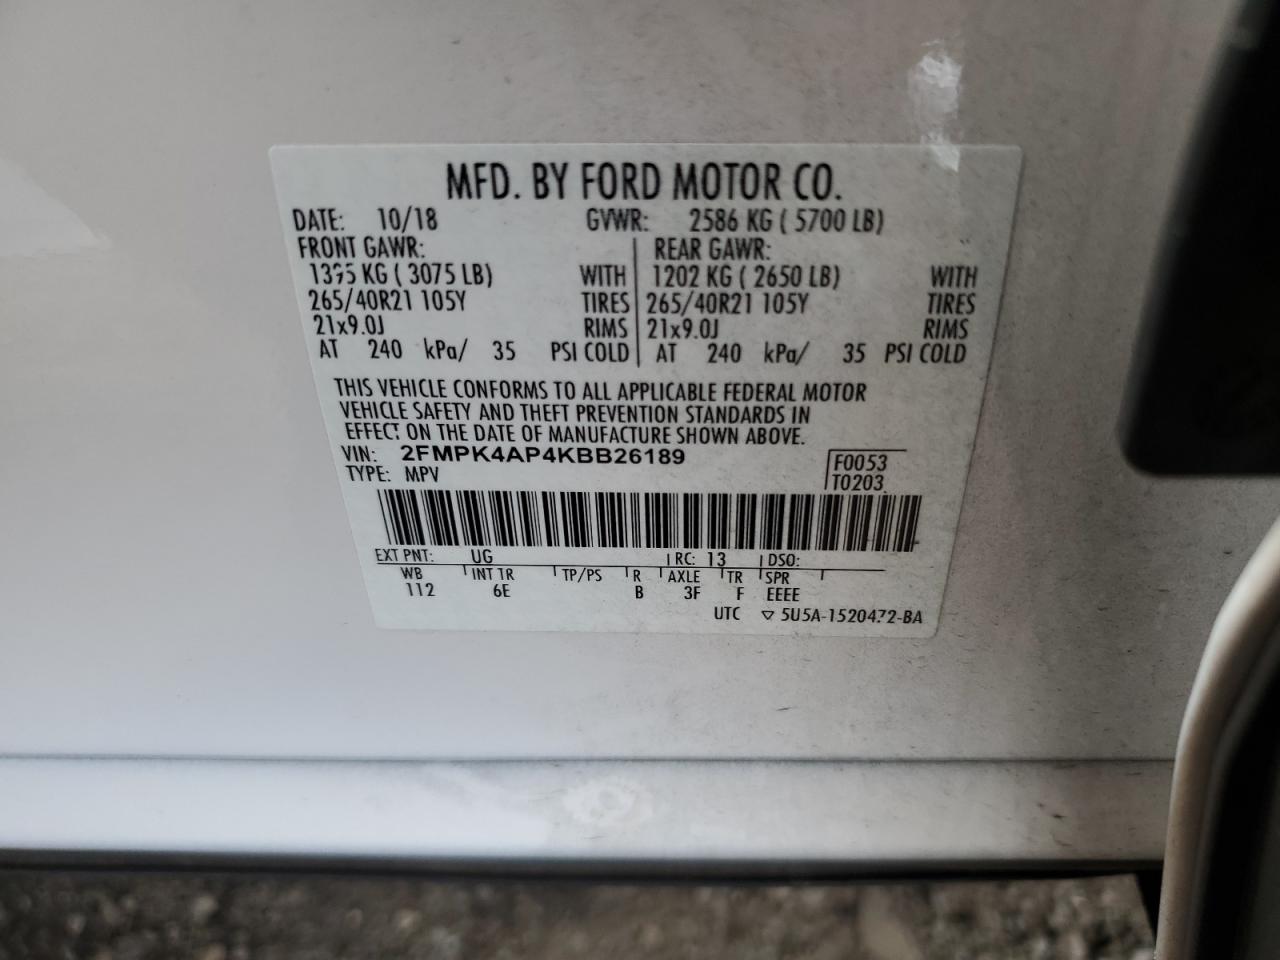 2019 Ford Edge St vin: 2FMPK4AP4KBB26189